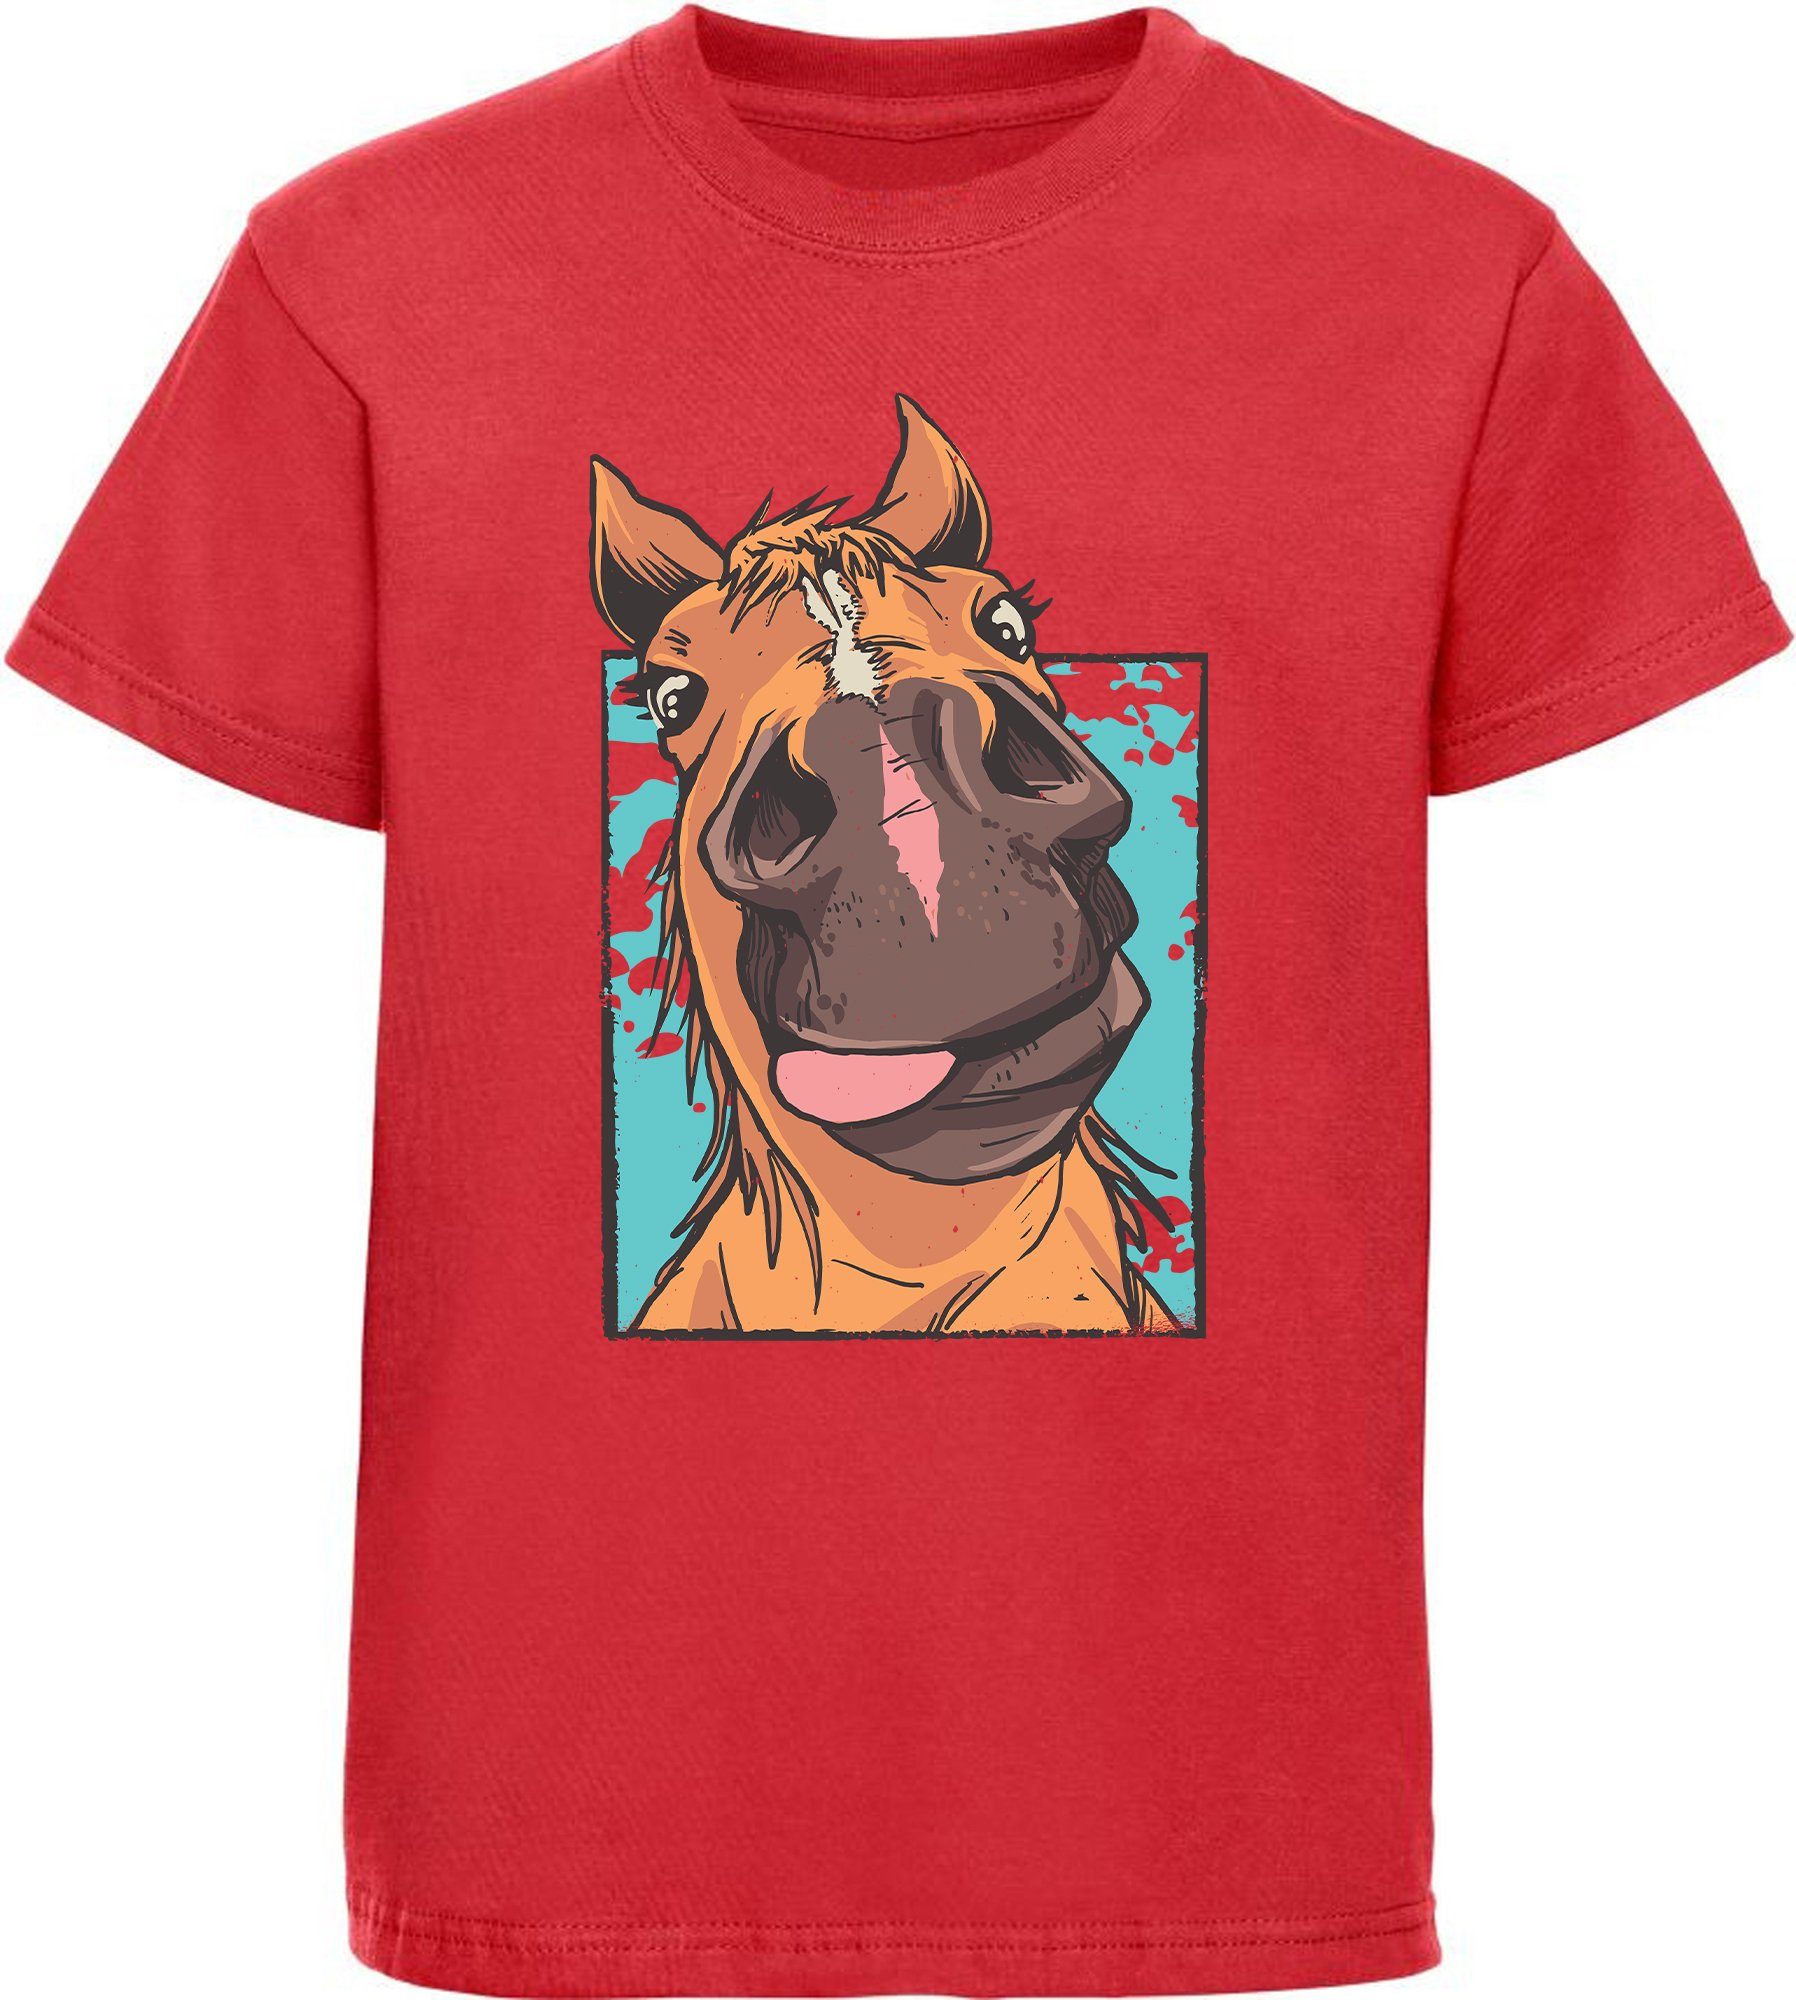 MyDesign24 Print-Shirt bedrucktes Kinder T-Shirt lustiger Pferdekopf mit Zunge Baumwollshirt mit Aufdruck, i153 rot